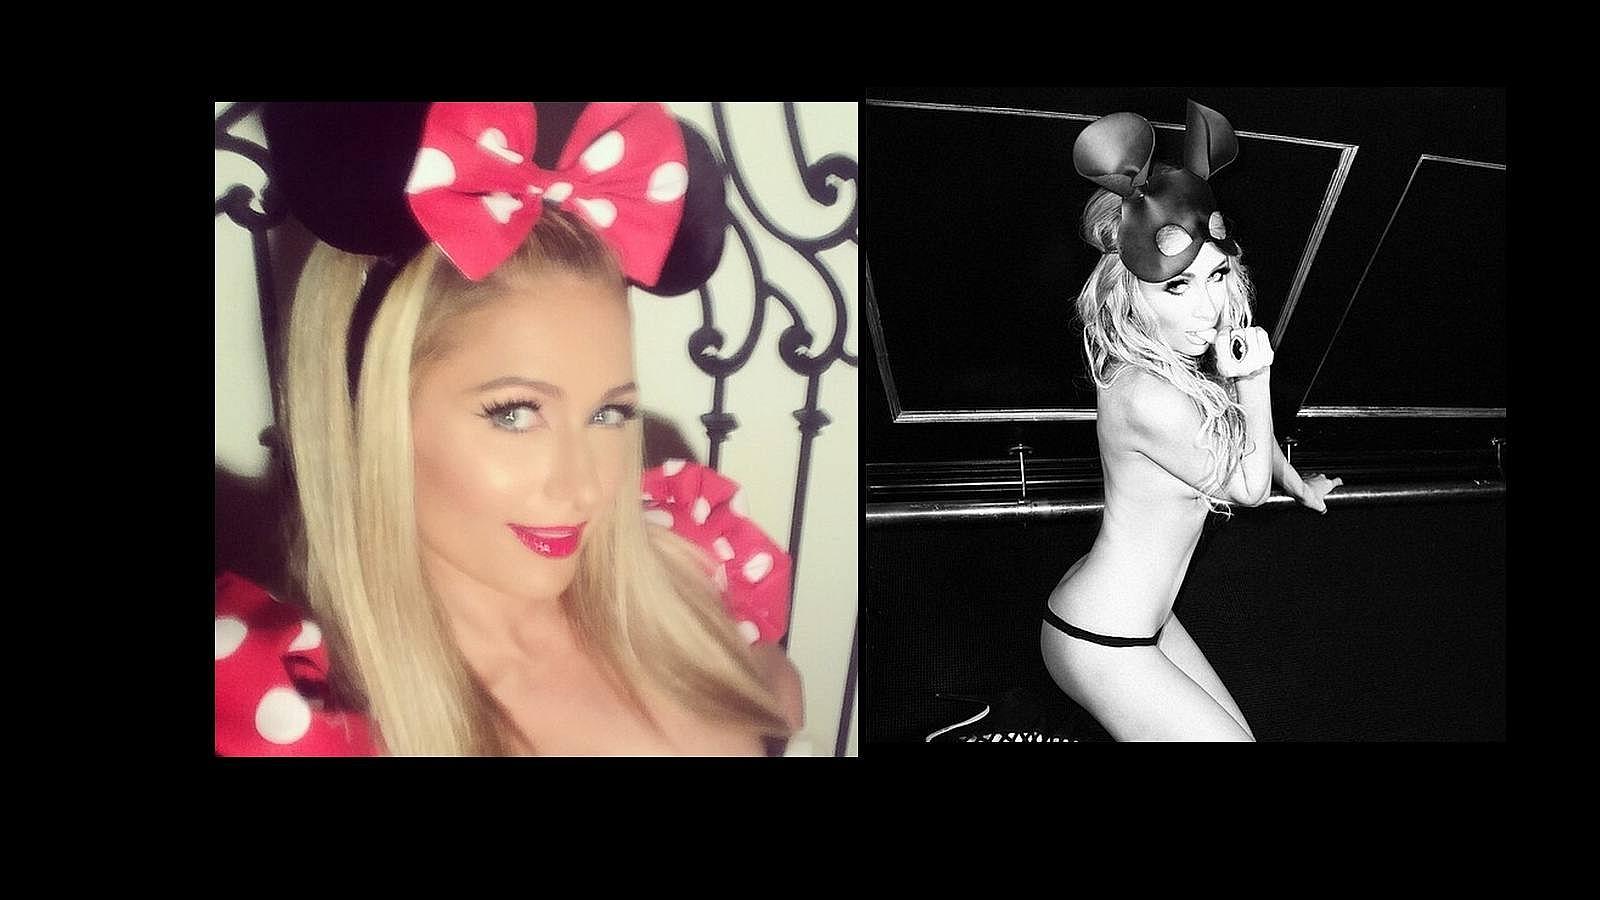 El personaje elegico por Paris Hilton fue Minnie Mouse